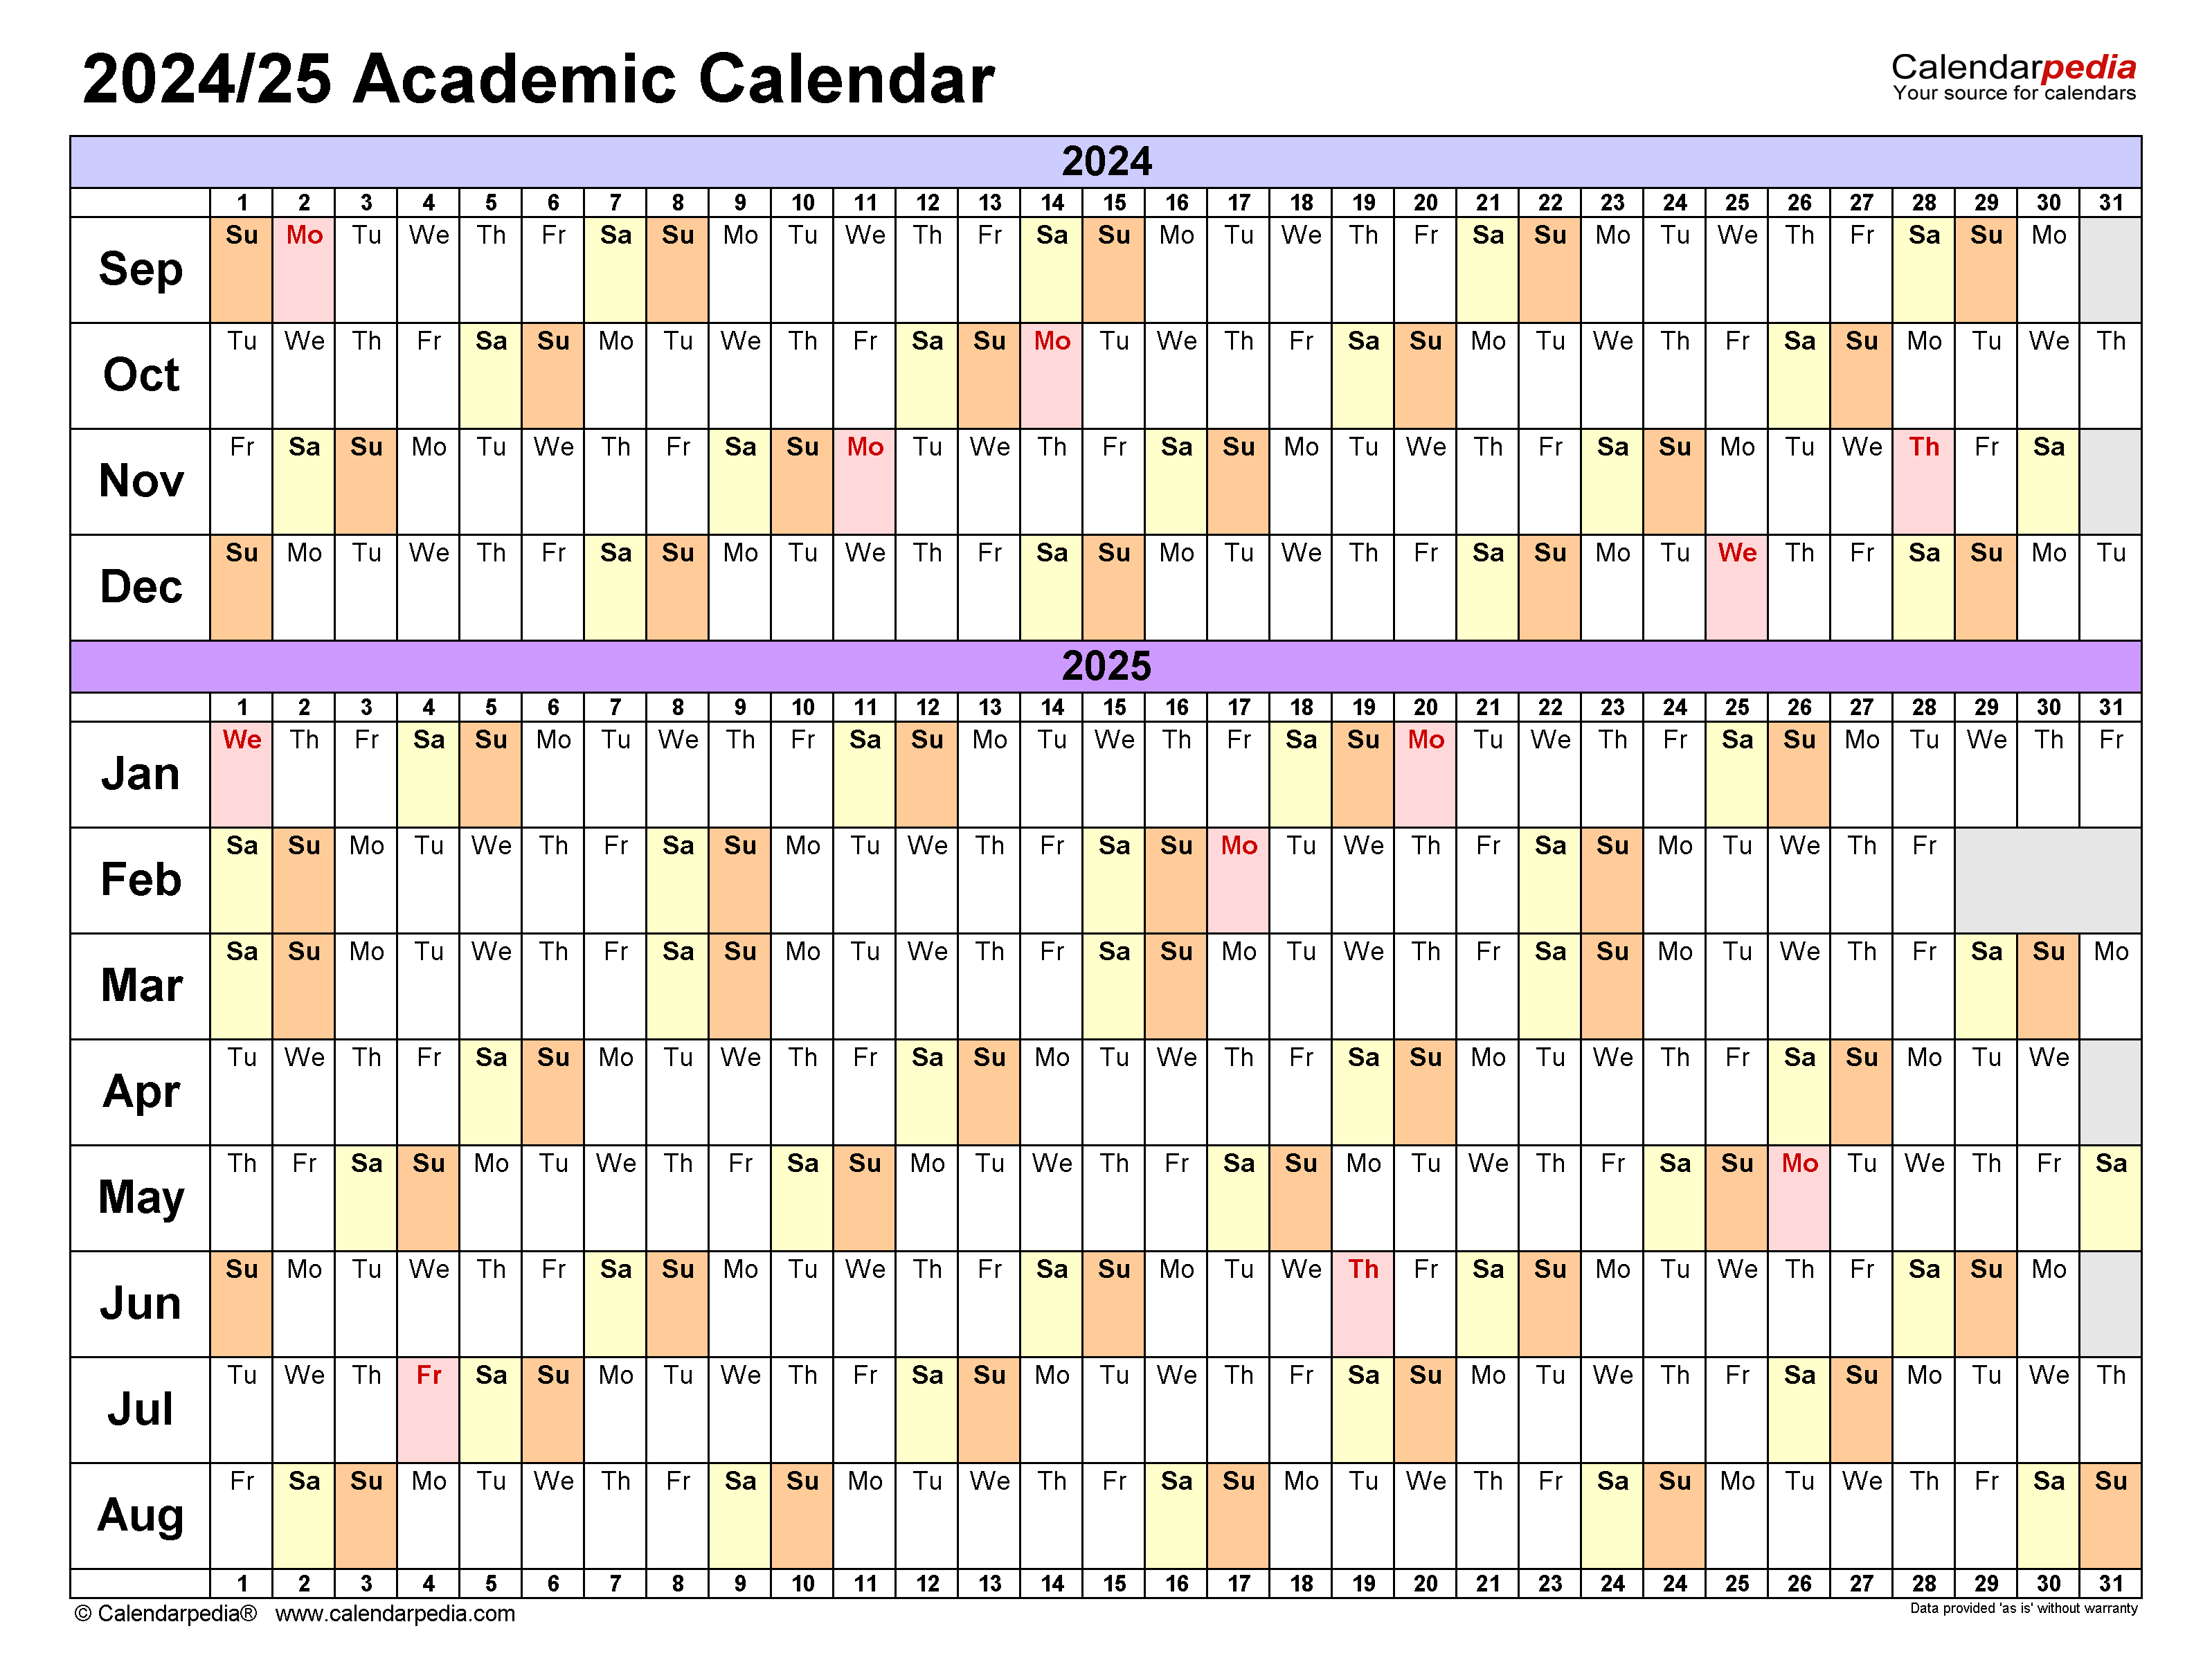 Utd Academic Calendar Spring 2025 babita yevette